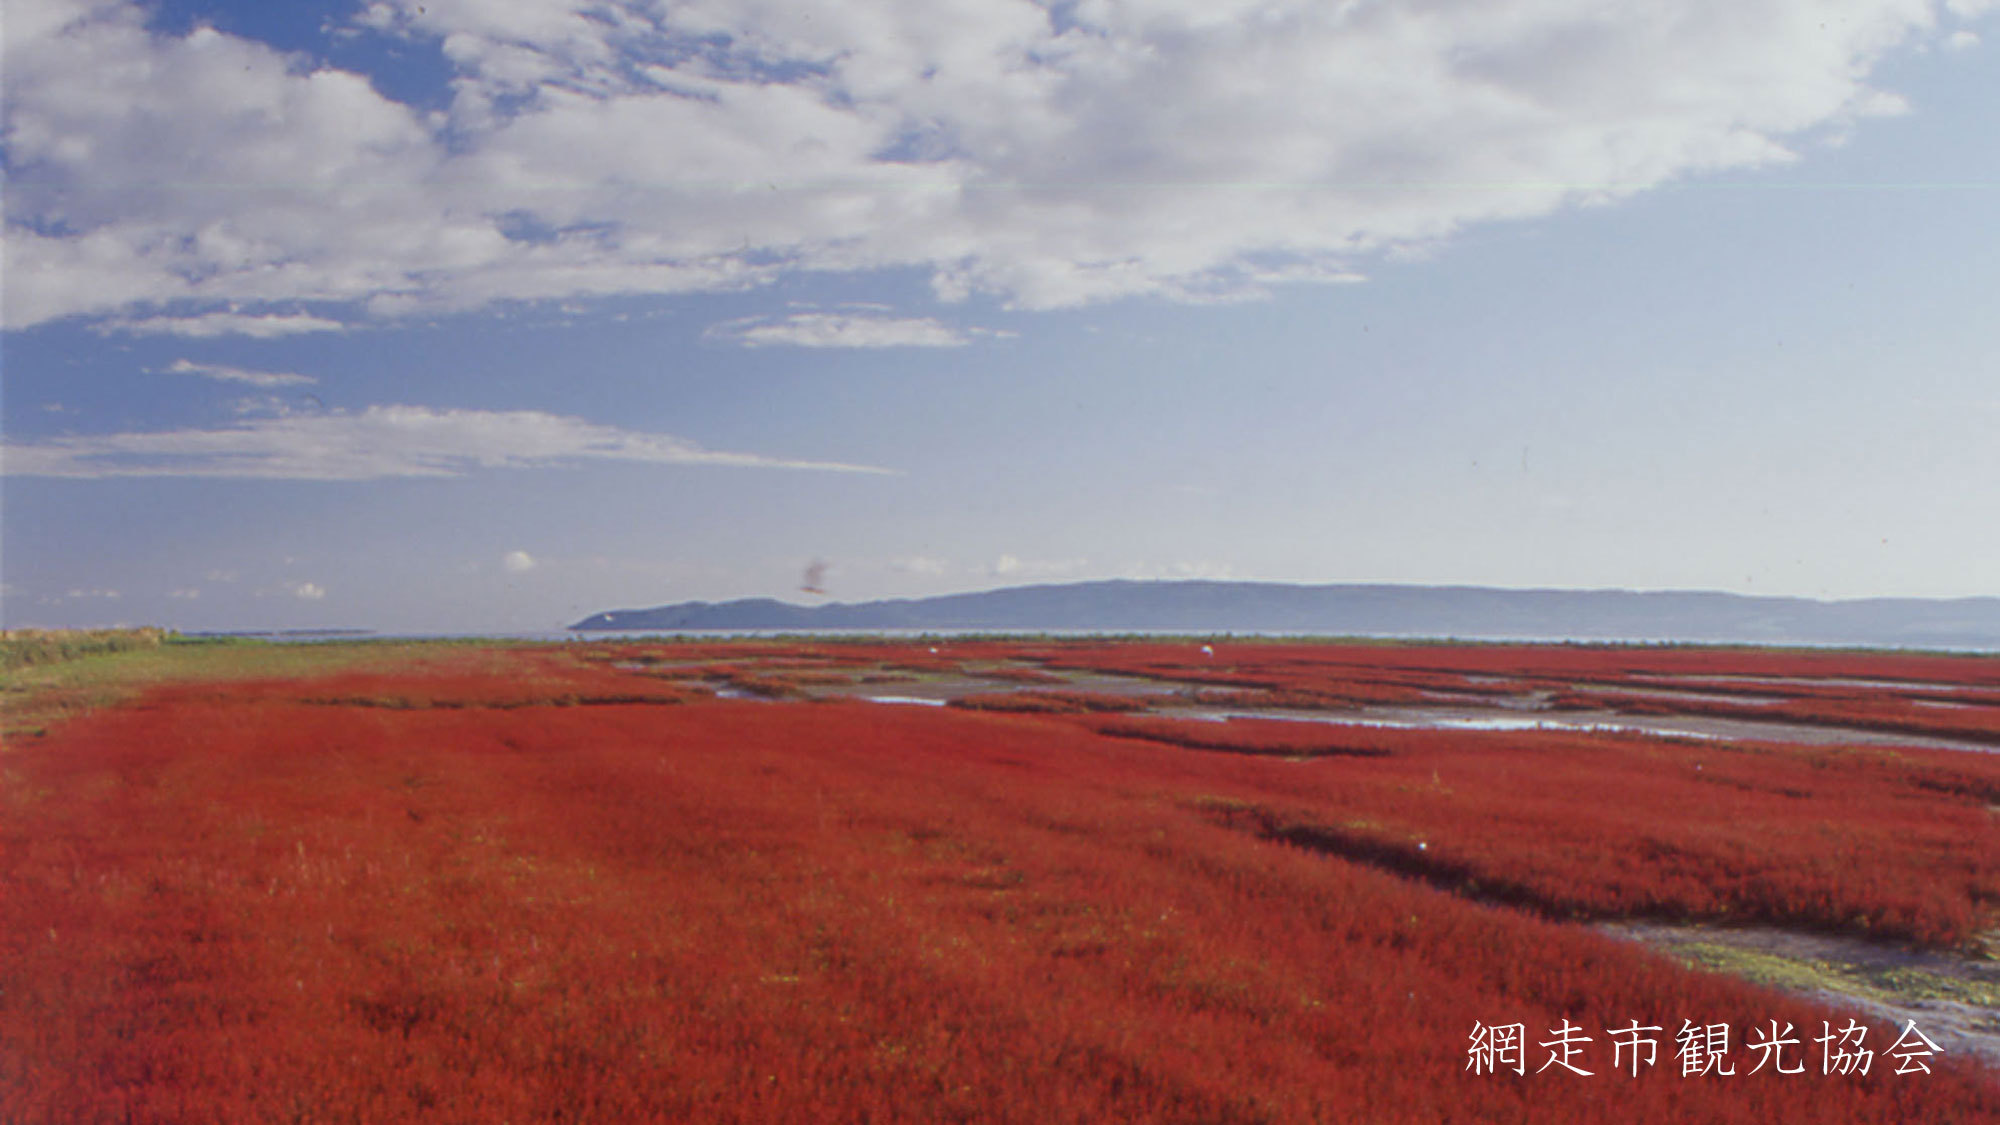 *［能取湖］当館より車で約17分。日本一の規模を誇るサンゴ草の群生地。例年見頃は9月中旬〜下旬